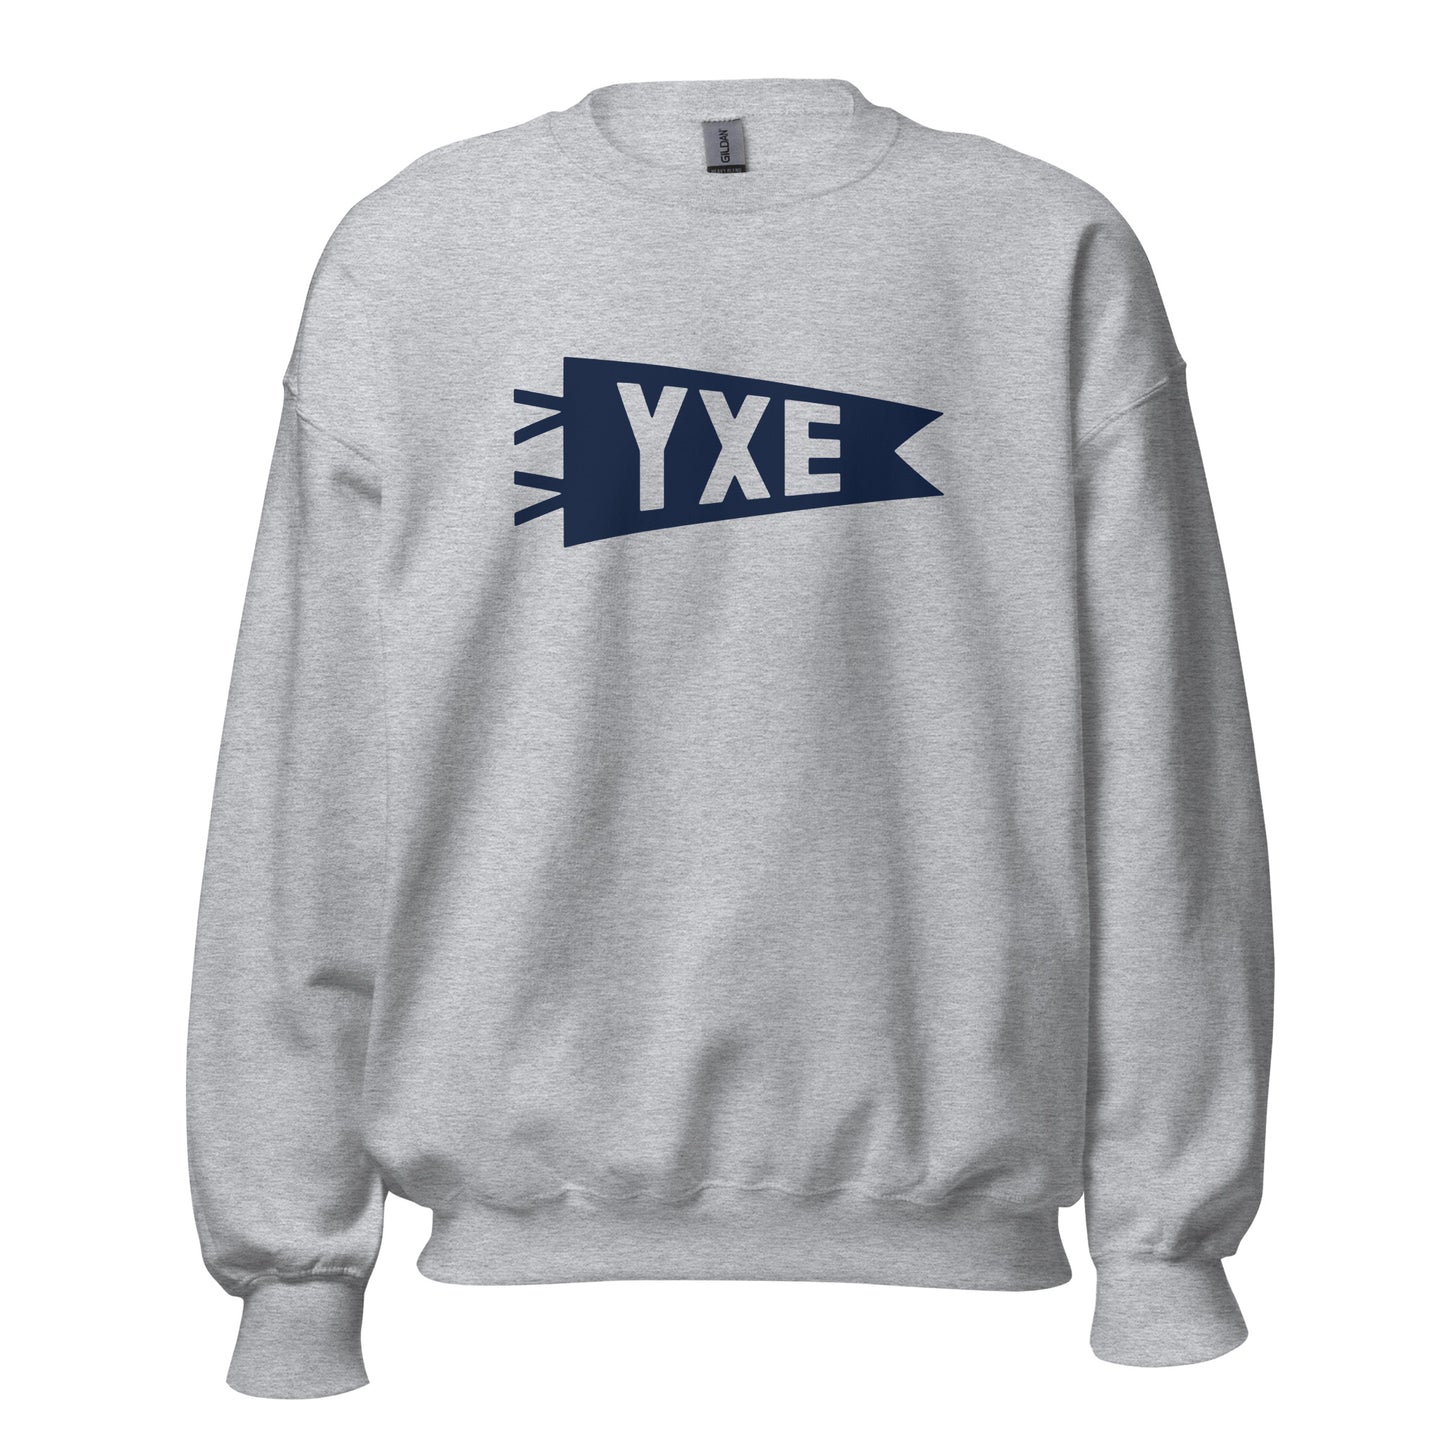 Airport Code Sweatshirt - Navy Blue Graphic • YXE Saskatoon • YHM Designs - Image 08